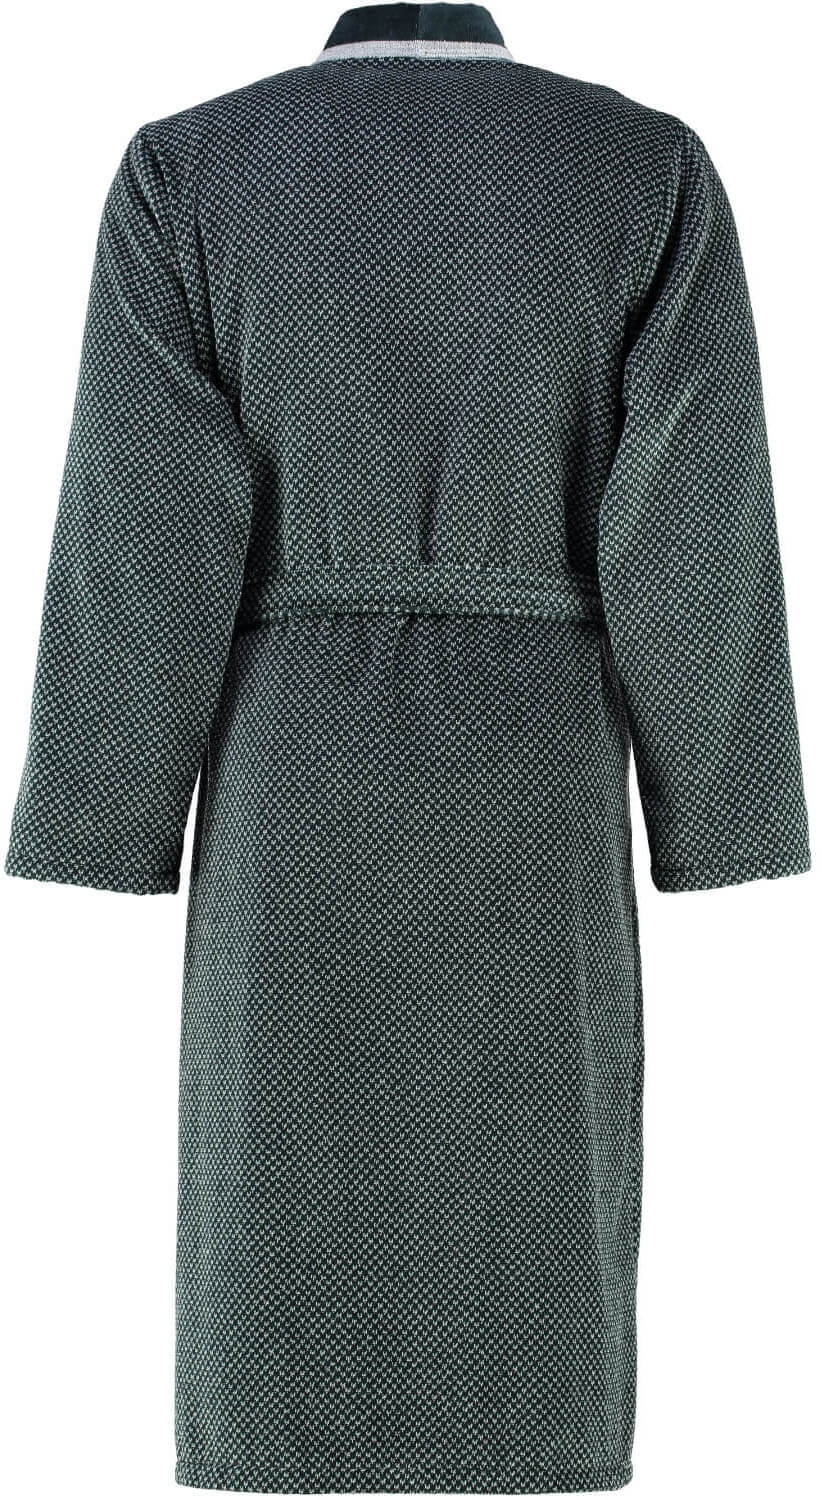 Банный халат Kimono Silder Schwarz